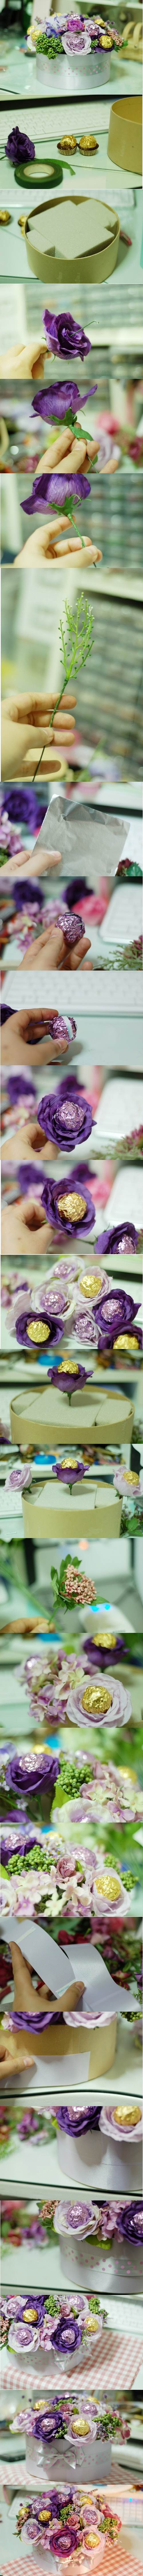 DIY Valentines Day Chocolate Flower Bouquet 2